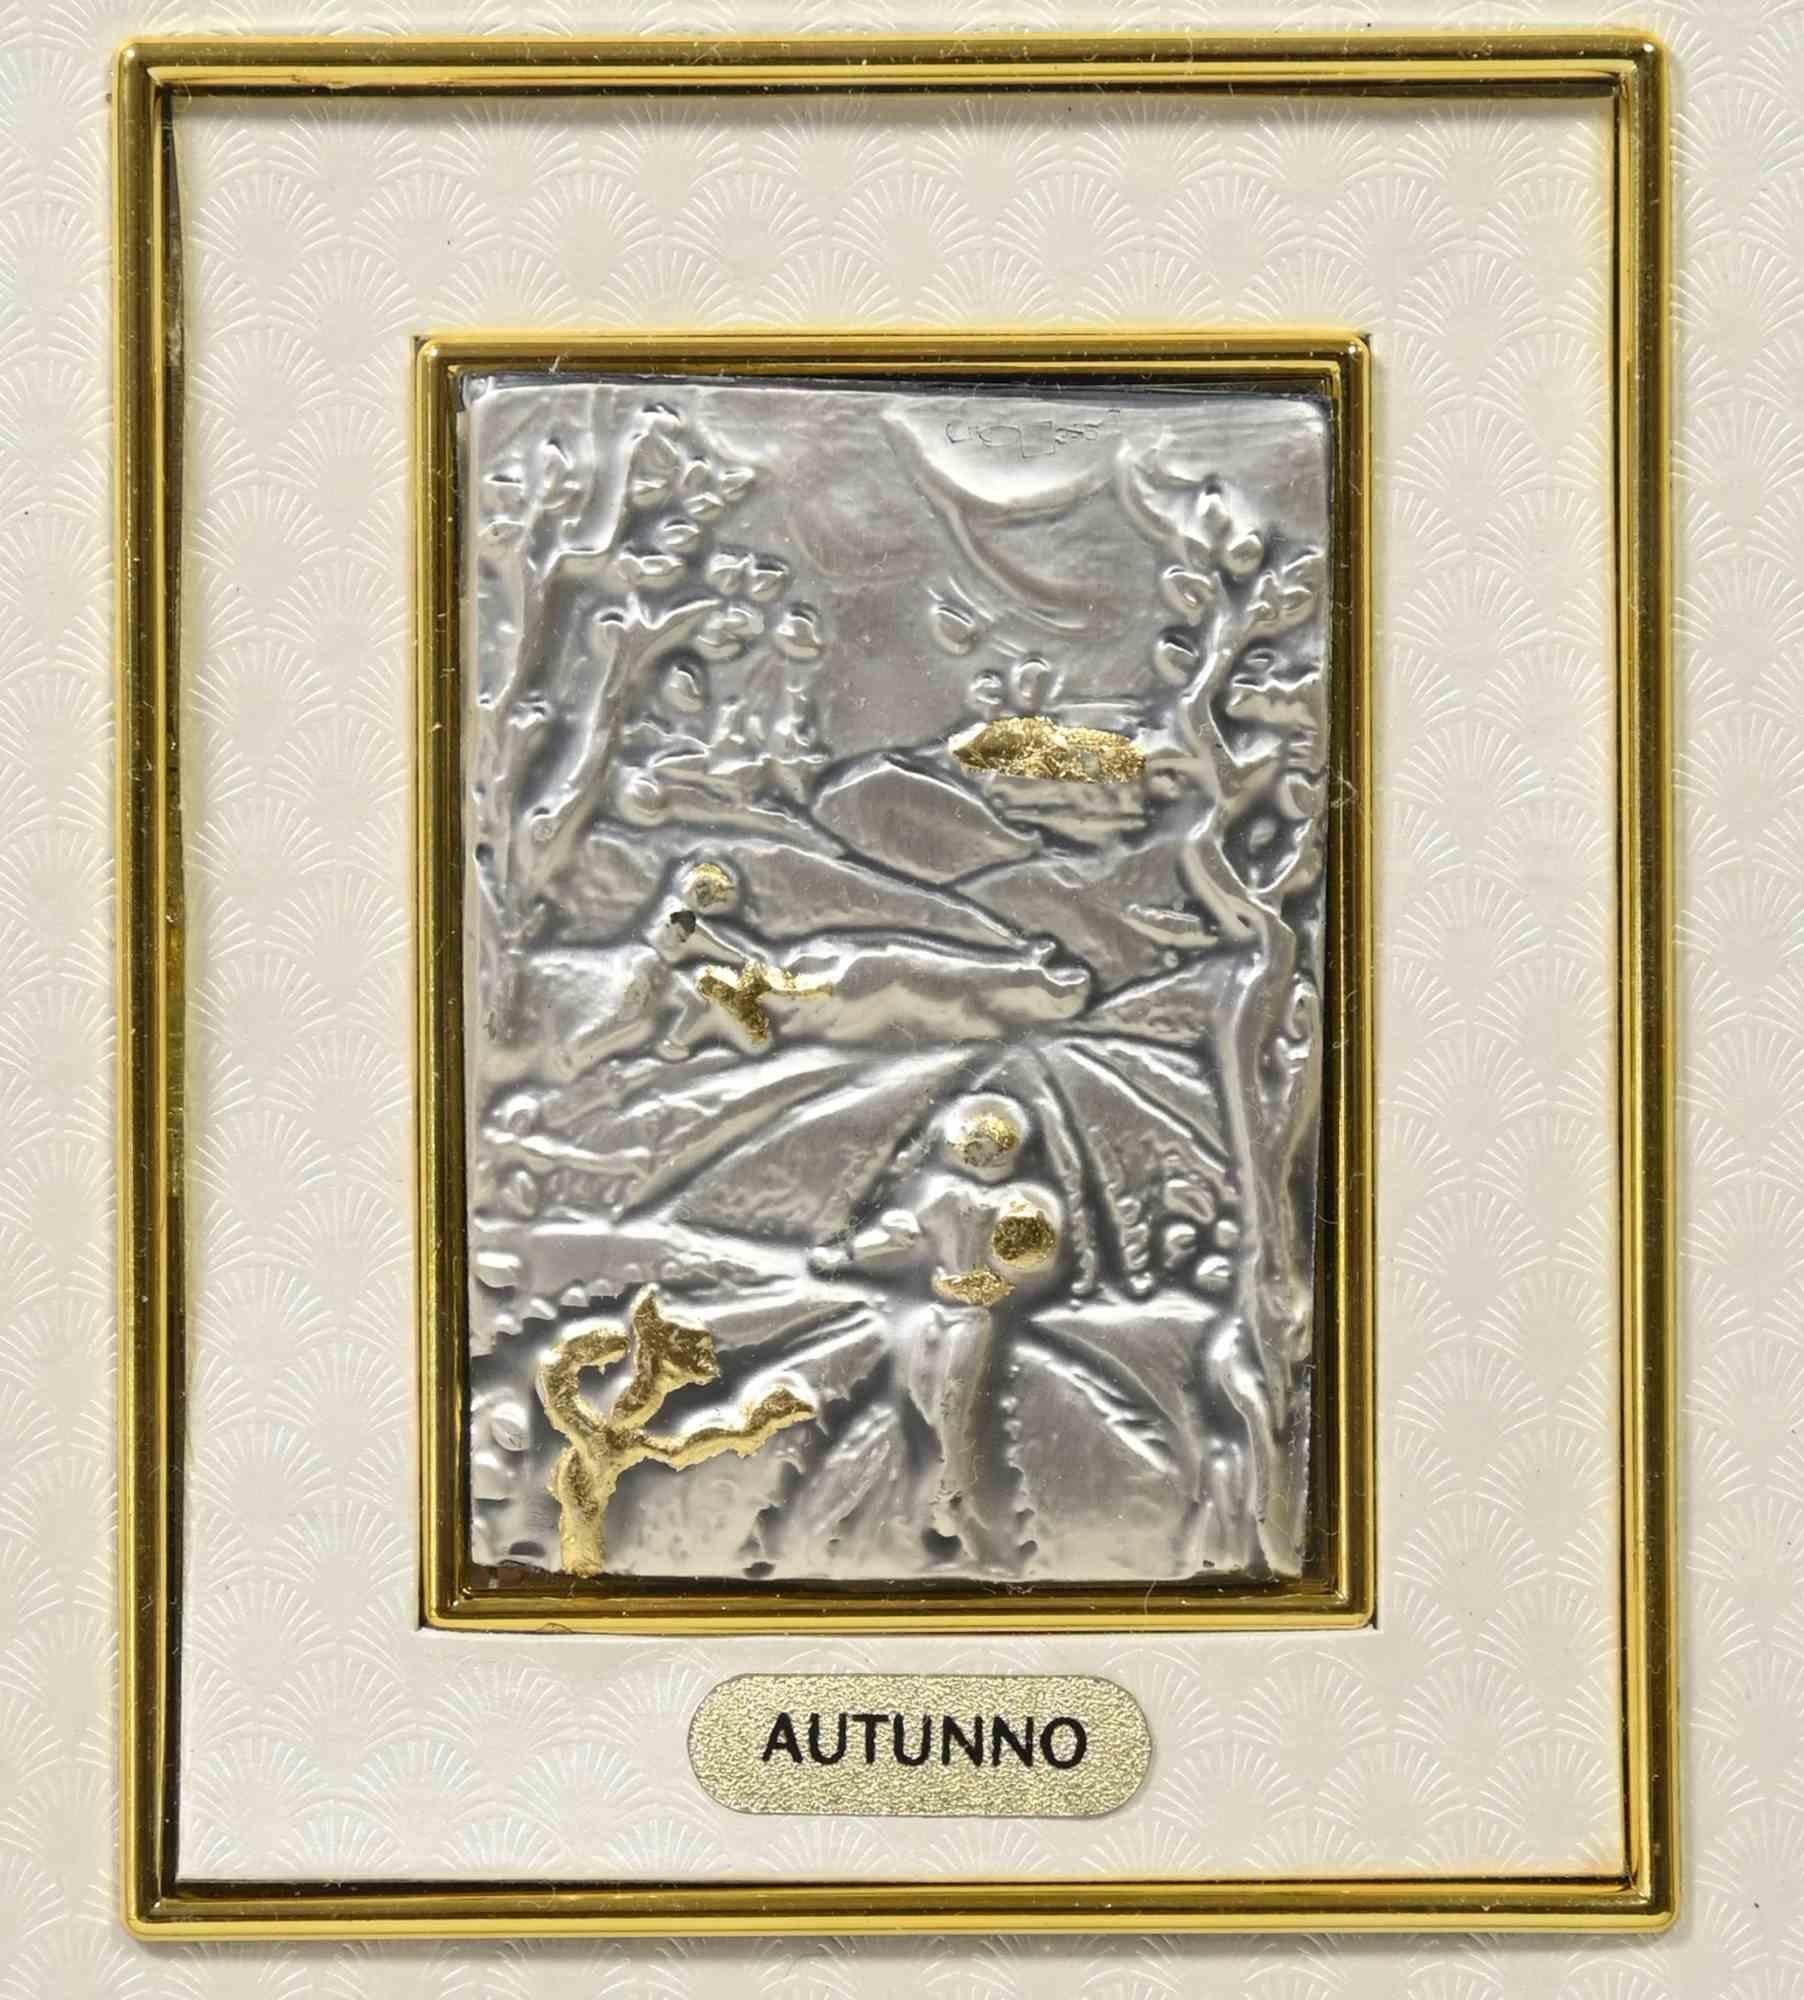 Autumn ist ein modernes Kunstwerk, das in den 1970er Jahren entstanden ist.

Realisiert von Euroesse (Label auf der Rückseite)

Das Kunstwerk ist auf Silberplatte und Blattgold realisiert.

Einschließlich Rahmen.